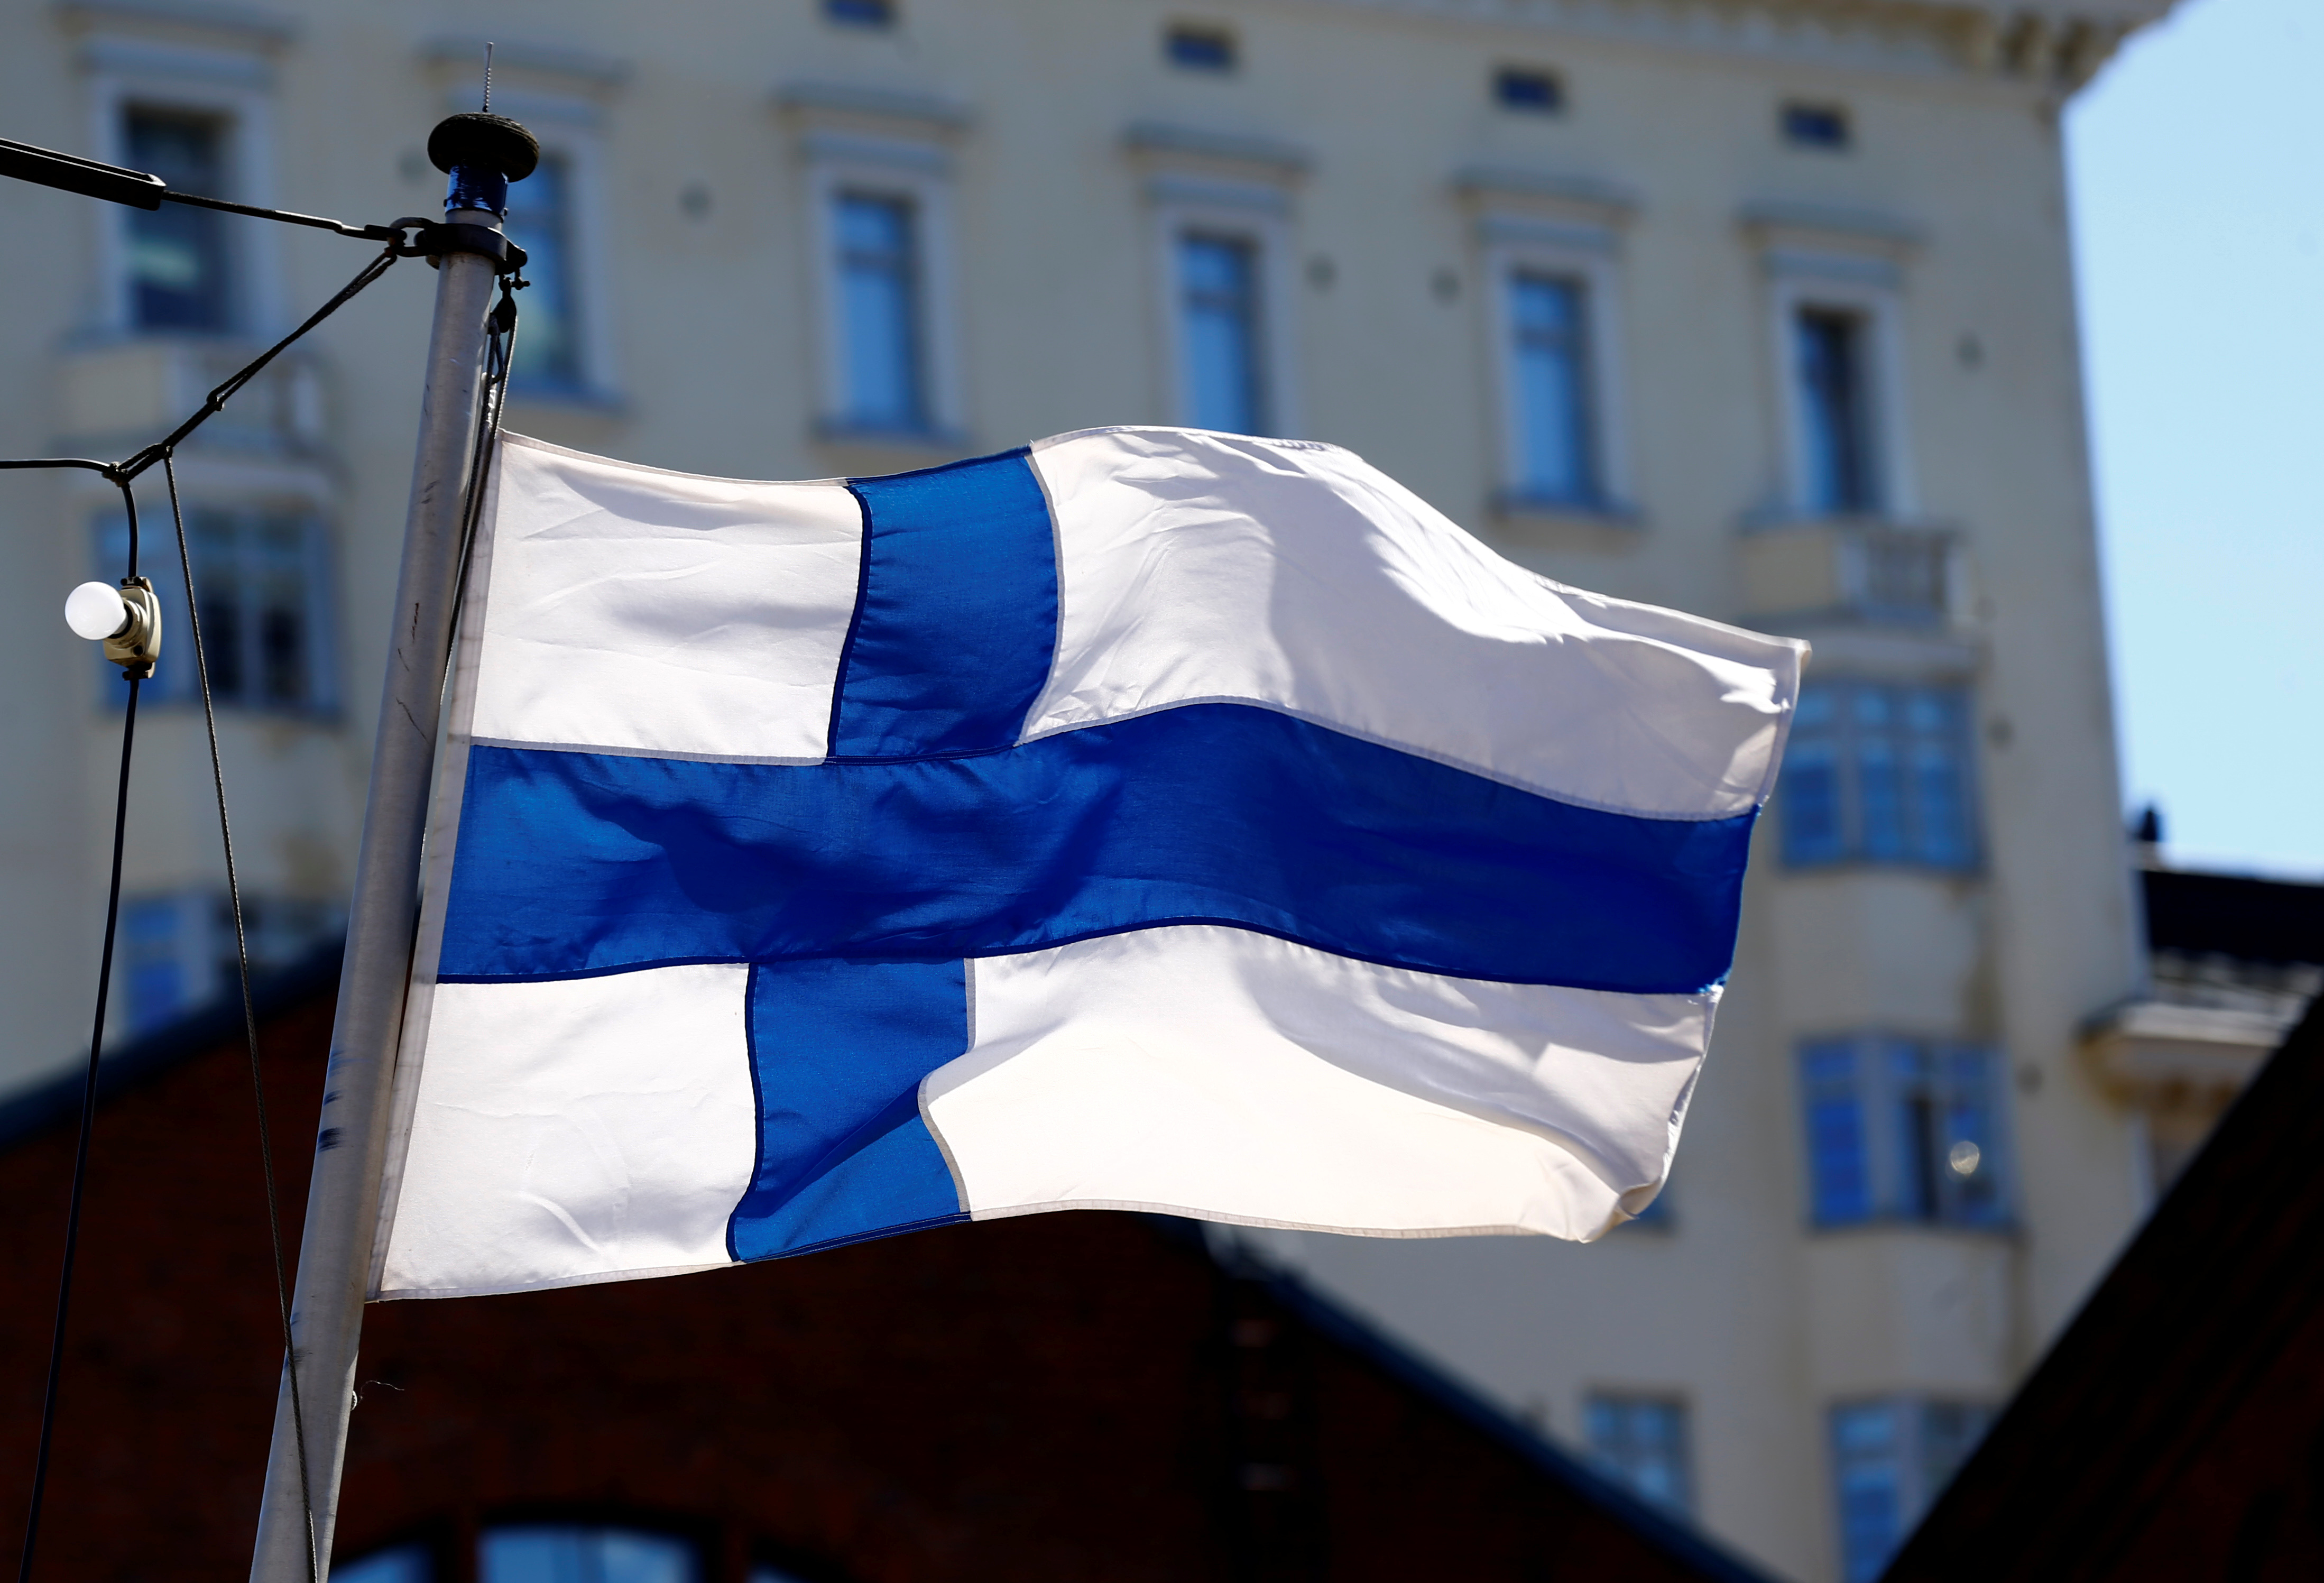 Finland's flag flutters in Helsinki